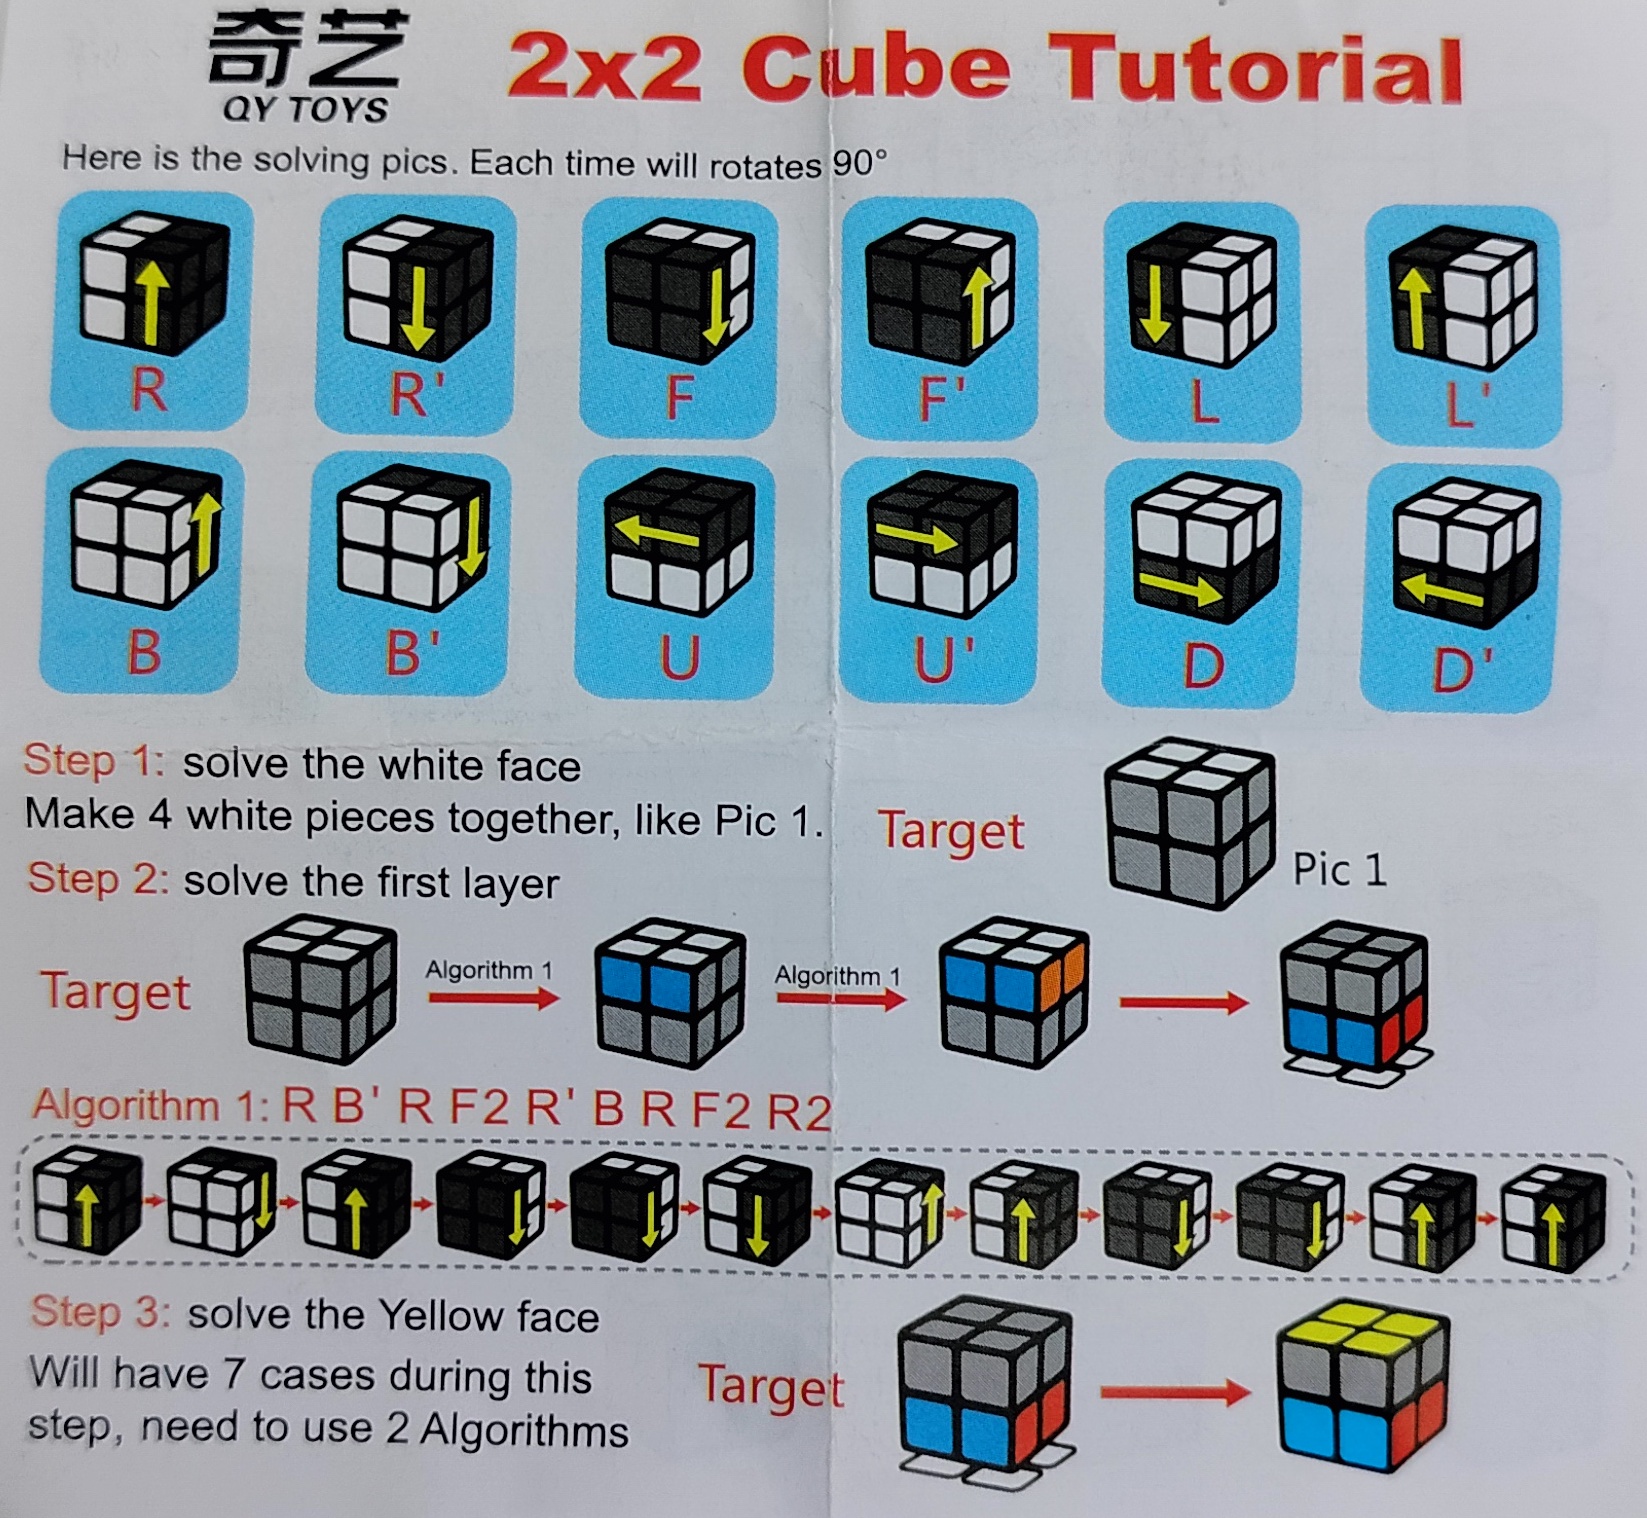 Como Hacer El Cubo 2x2 Como hacer un cubo de Rubik 2x2 | Anecdonet | Anécdotas y más cosas